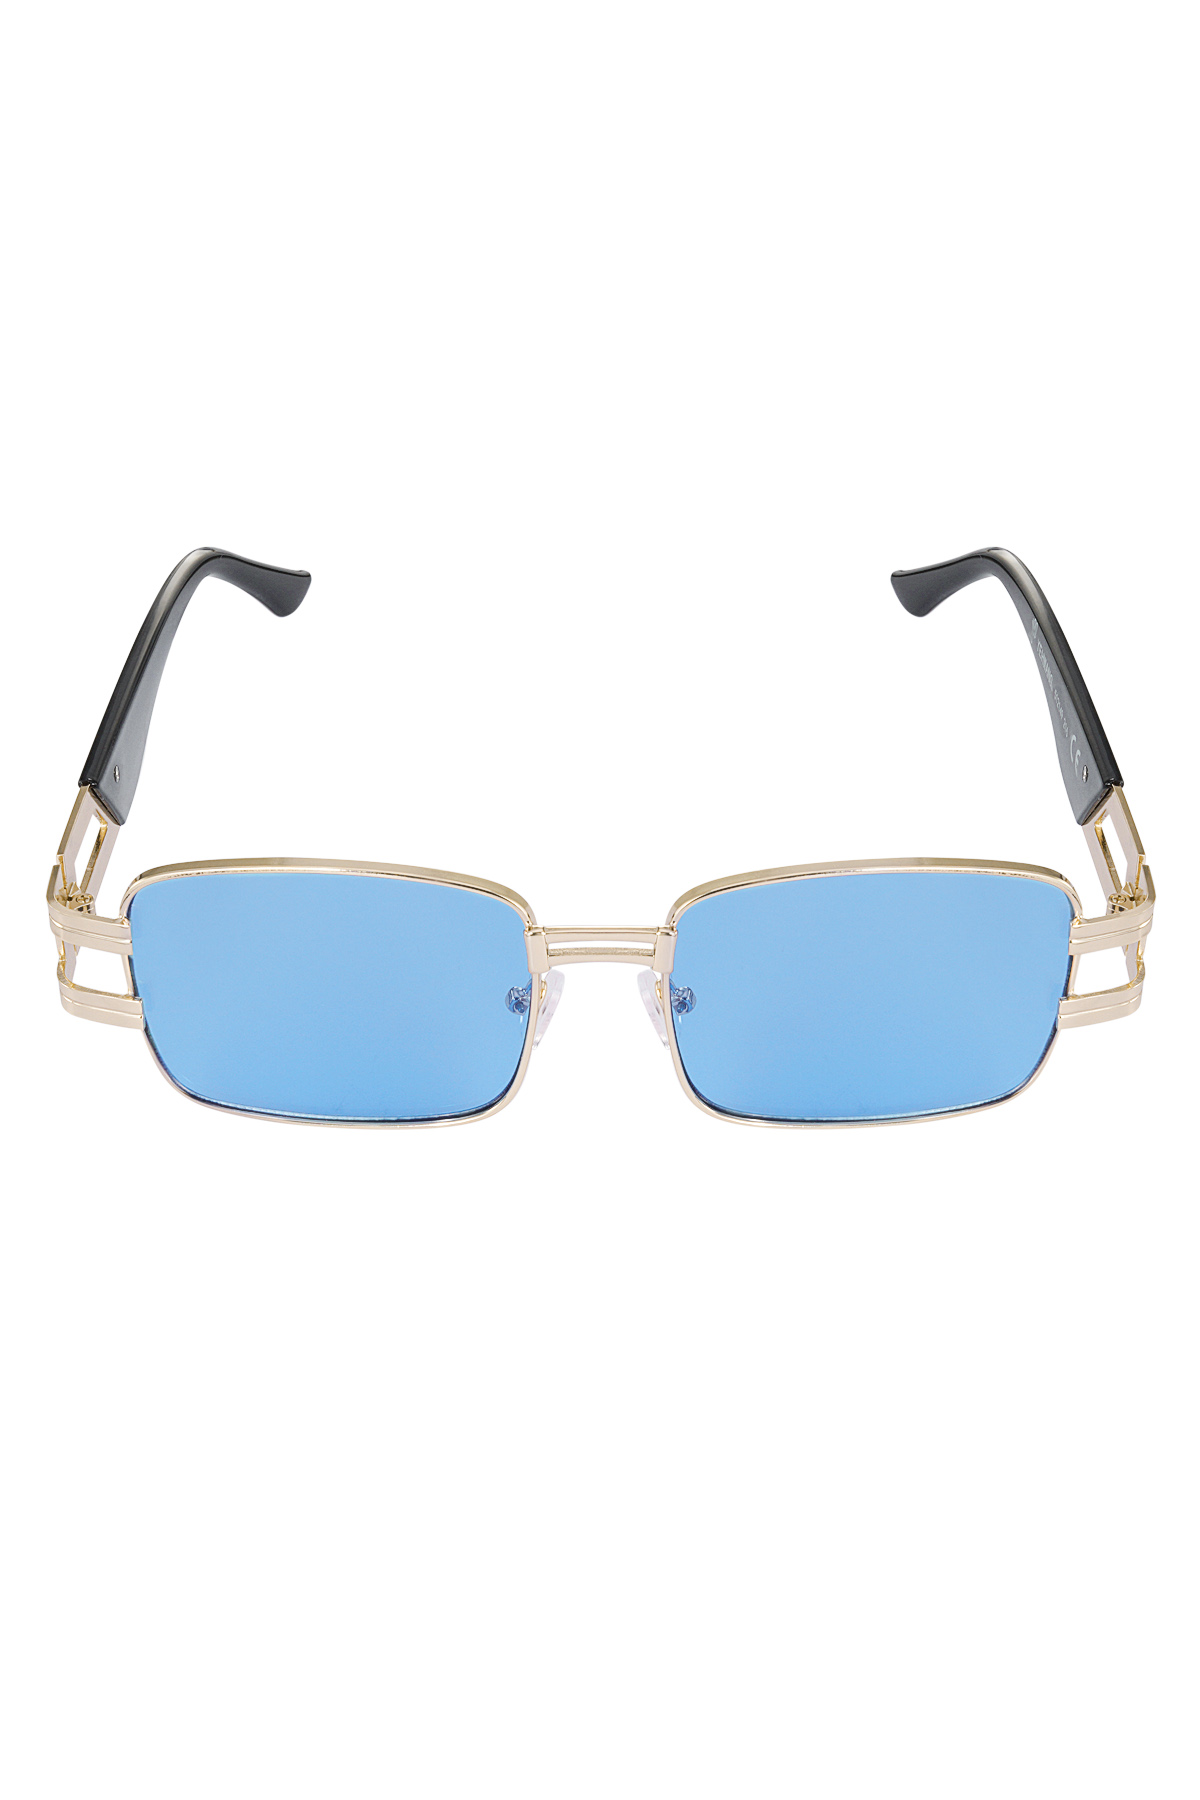 Güneş gözlüğü basit metal esaslı - mavi altın h5 Resim4